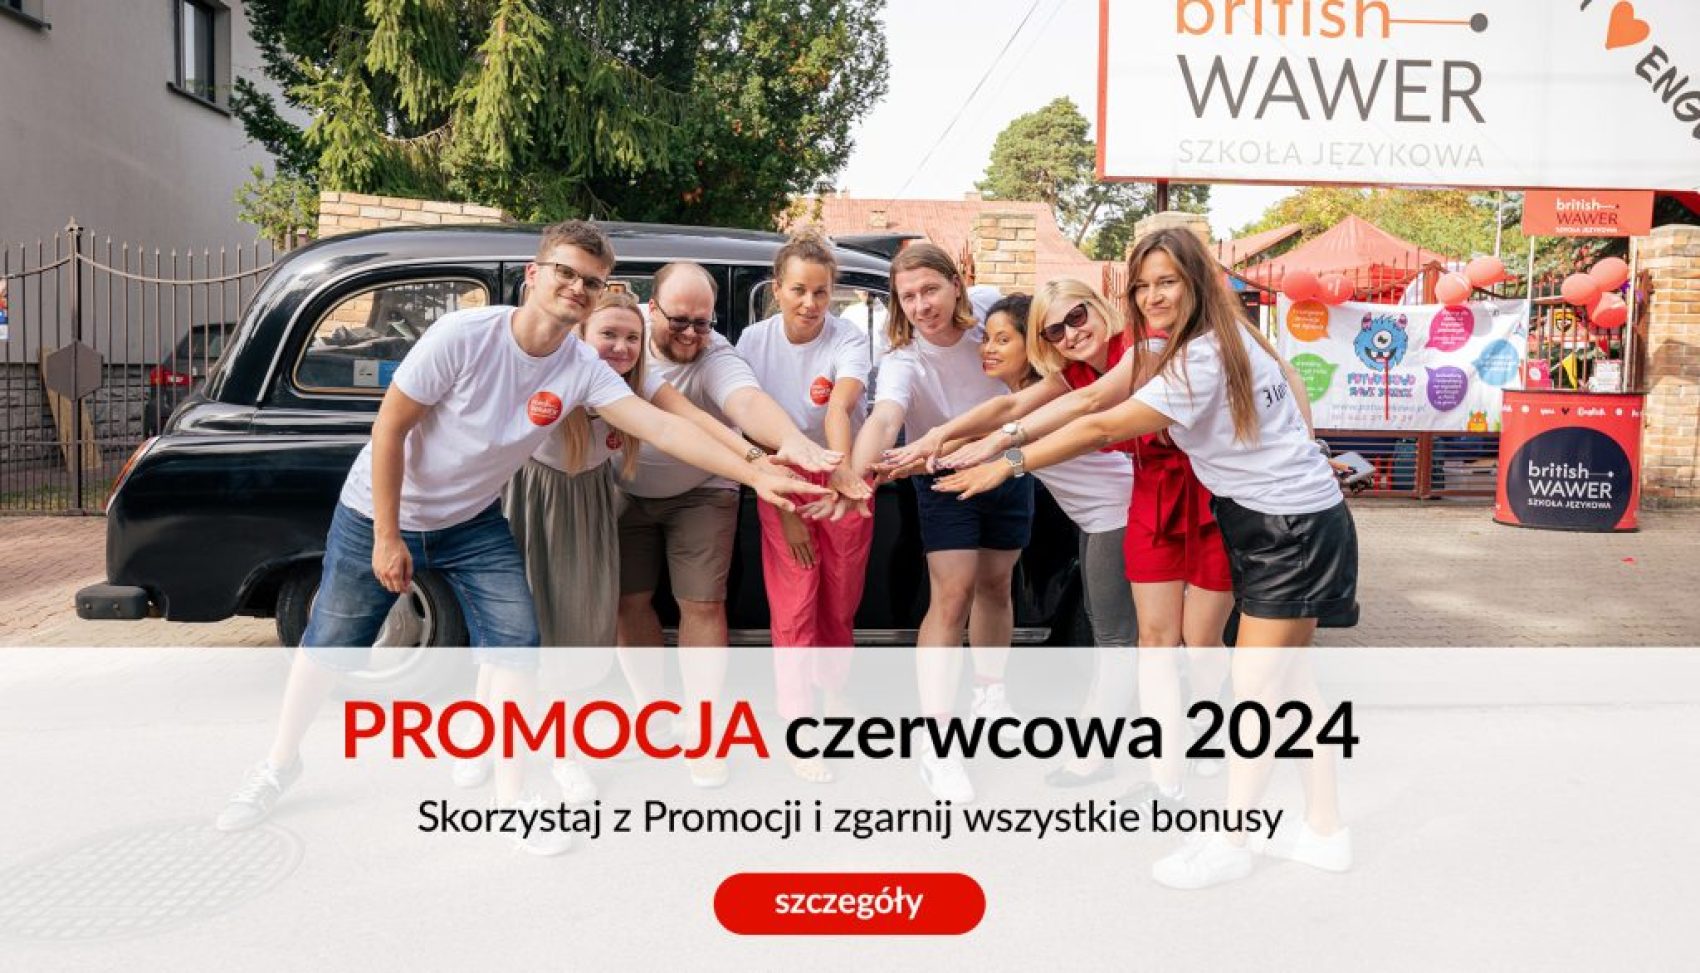 promocja-czerwcowa-2024-british-wawer2